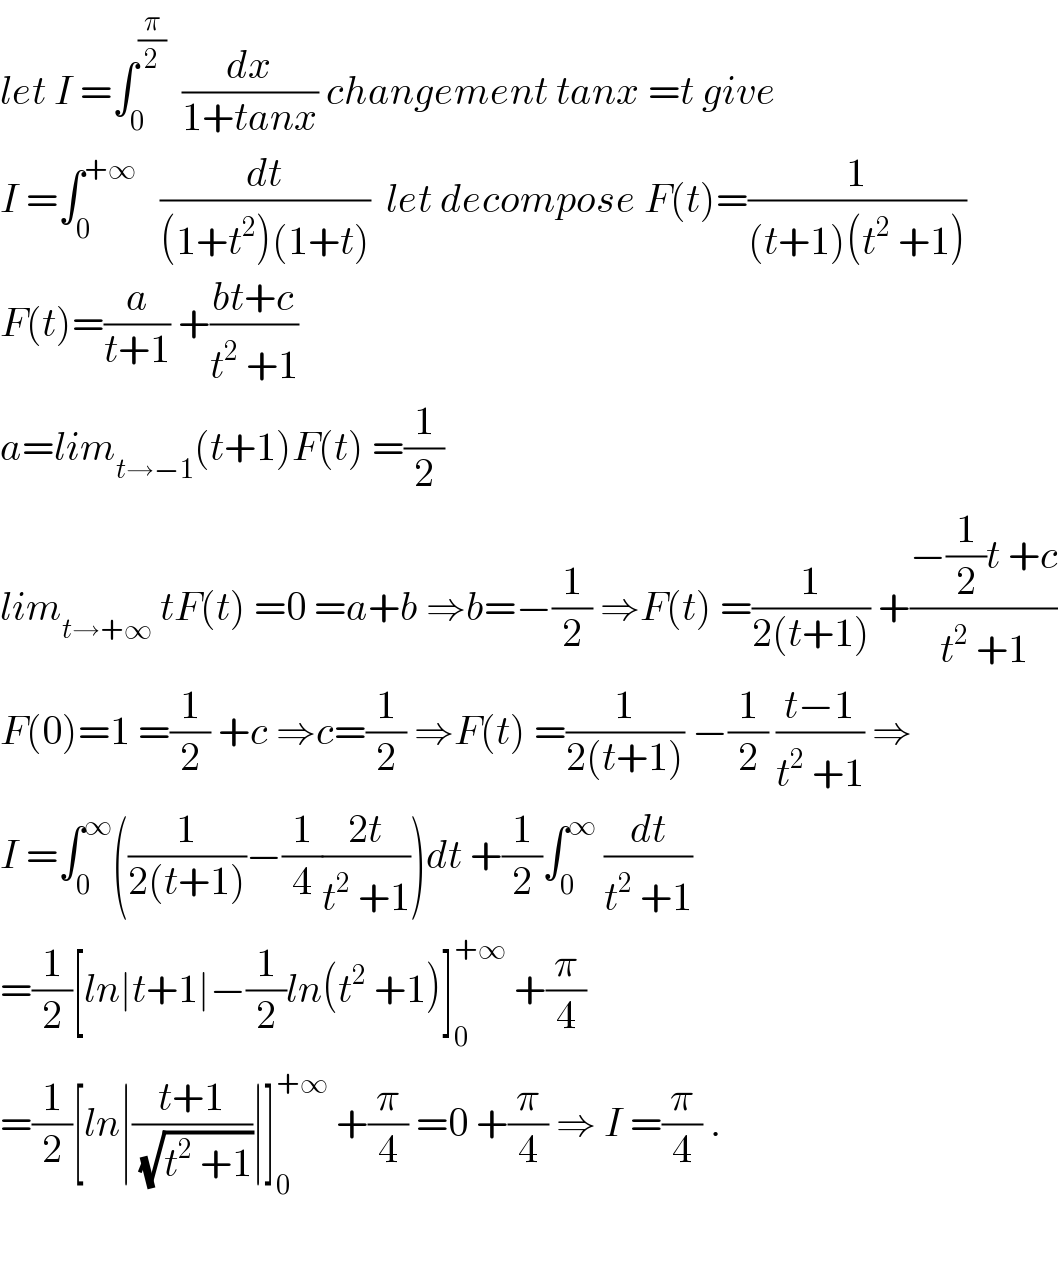 let I =∫_0 ^(π/2)   (dx/(1+tanx)) changement tanx =t give  I =∫_0 ^(+∞)    (dt/((1+t^2 )(1+t)))  let decompose F(t)=(1/((t+1)(t^2  +1)))  F(t)=(a/(t+1)) +((bt+c)/(t^2  +1))  a=lim_(t→−1) (t+1)F(t) =(1/2)  lim_(t→+∞)  tF(t) =0 =a+b ⇒b=−(1/2) ⇒F(t) =(1/(2(t+1))) +((−(1/2)t +c)/(t^2  +1))  F(0)=1 =(1/2) +c ⇒c=(1/2) ⇒F(t) =(1/(2(t+1))) −(1/2) ((t−1)/(t^2  +1)) ⇒  I =∫_0 ^∞ ((1/(2(t+1)))−(1/4)((2t)/(t^2  +1)))dt +(1/2)∫_0 ^∞  (dt/(t^2  +1))  =(1/2)[ln∣t+1∣−(1/2)ln(t^2  +1)]_0 ^(+∞)  +(π/4)  =(1/2)[ln∣((t+1)/(√(t^2  +1)))∣]_0 ^(+∞)  +(π/4) =0 +(π/4) ⇒ I =(π/4) .    